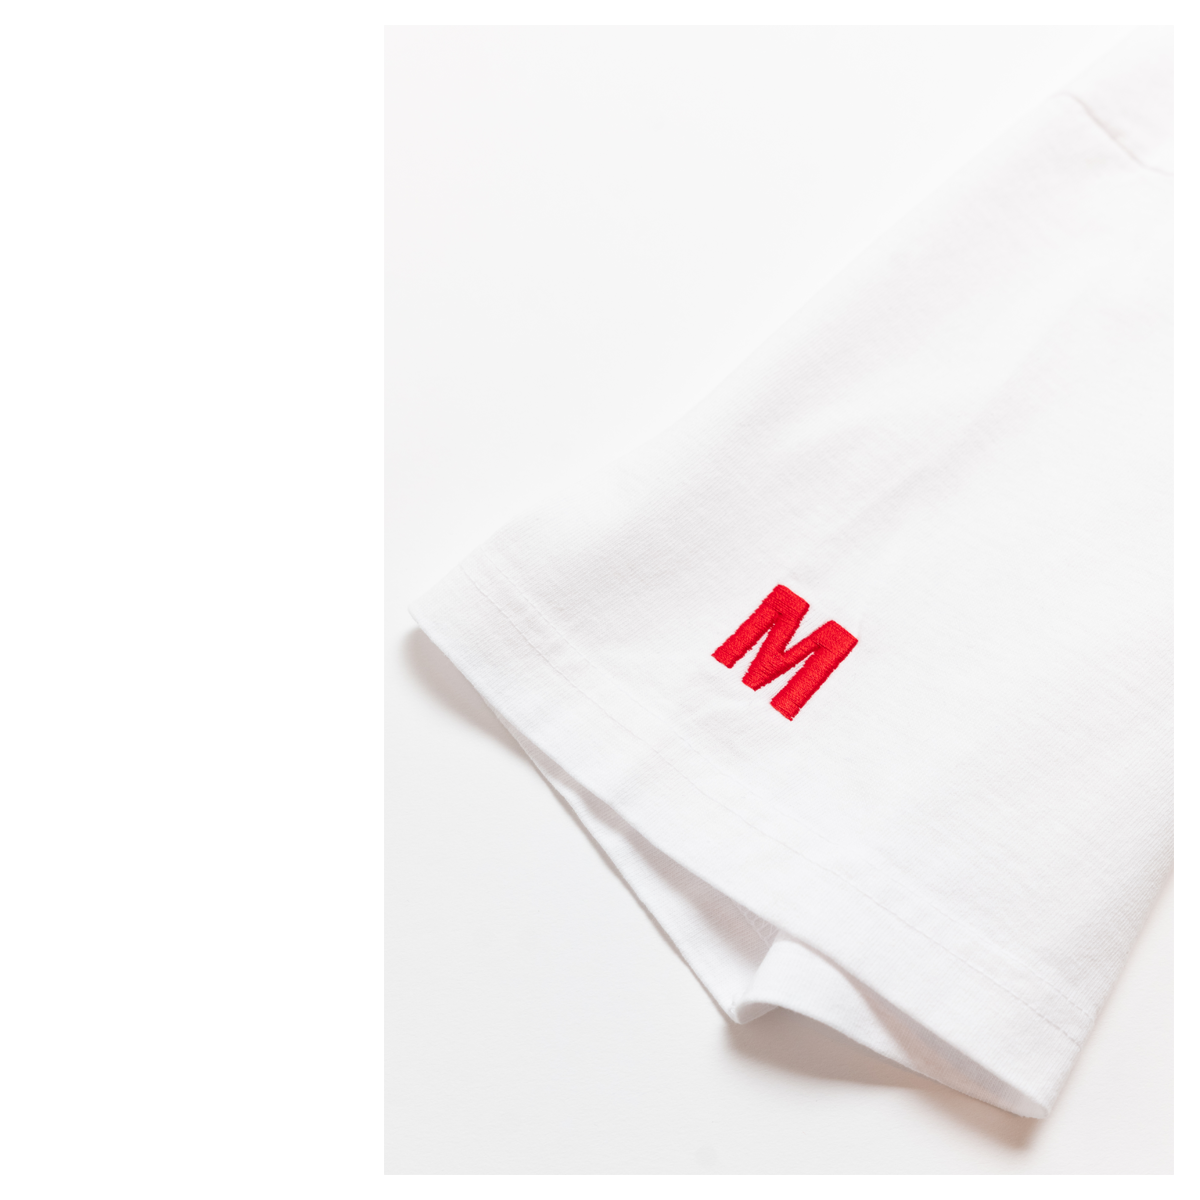 Rusted Safe (Photo) T-shirt - White-The Marathon Clothing